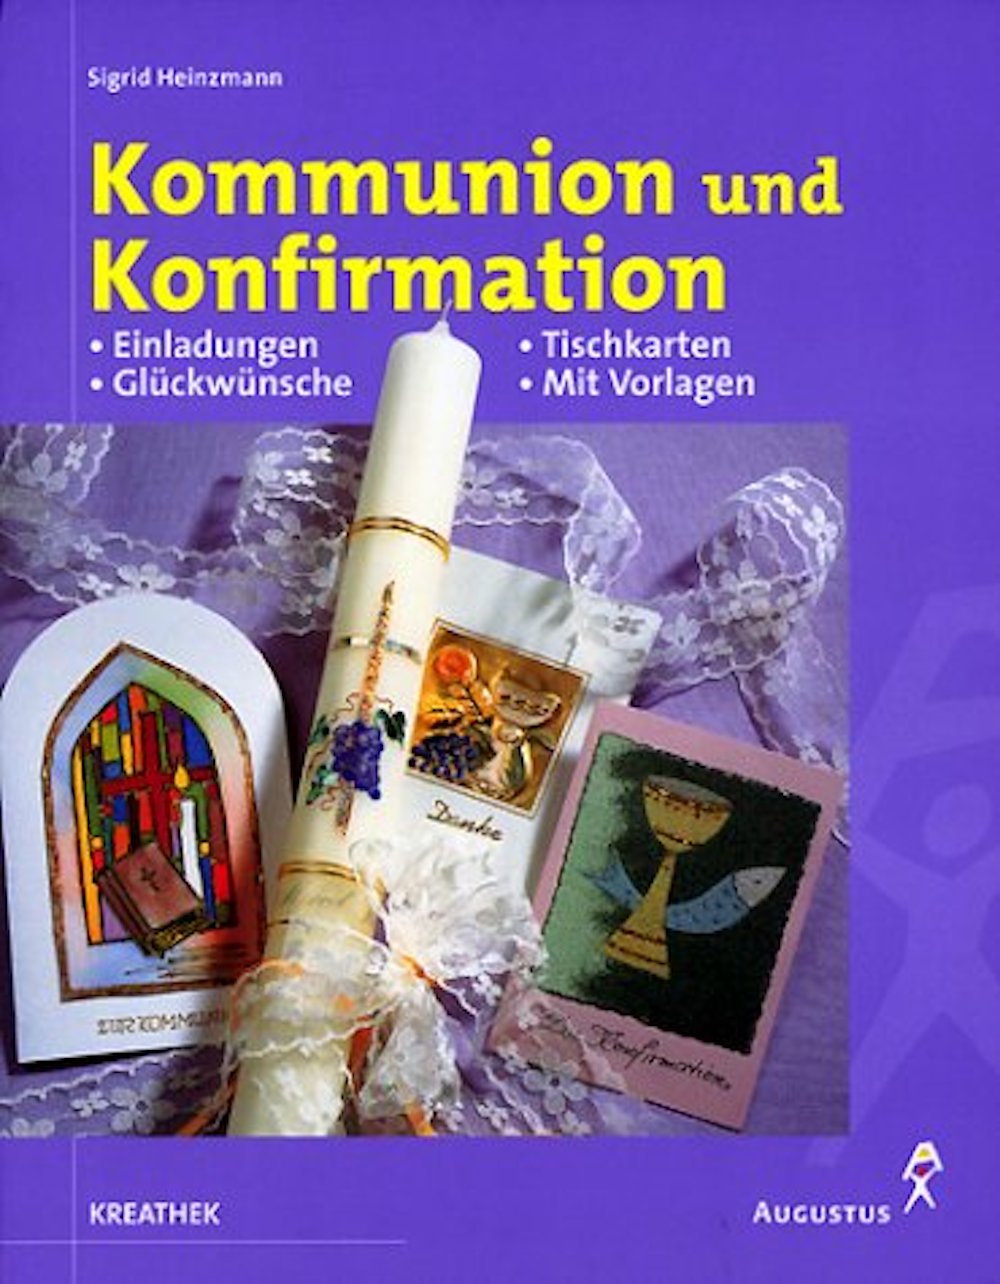 Buch Kommunion und Konfirmation : Einladungen, Glückwünsche, Tischkarten, Dankesch...